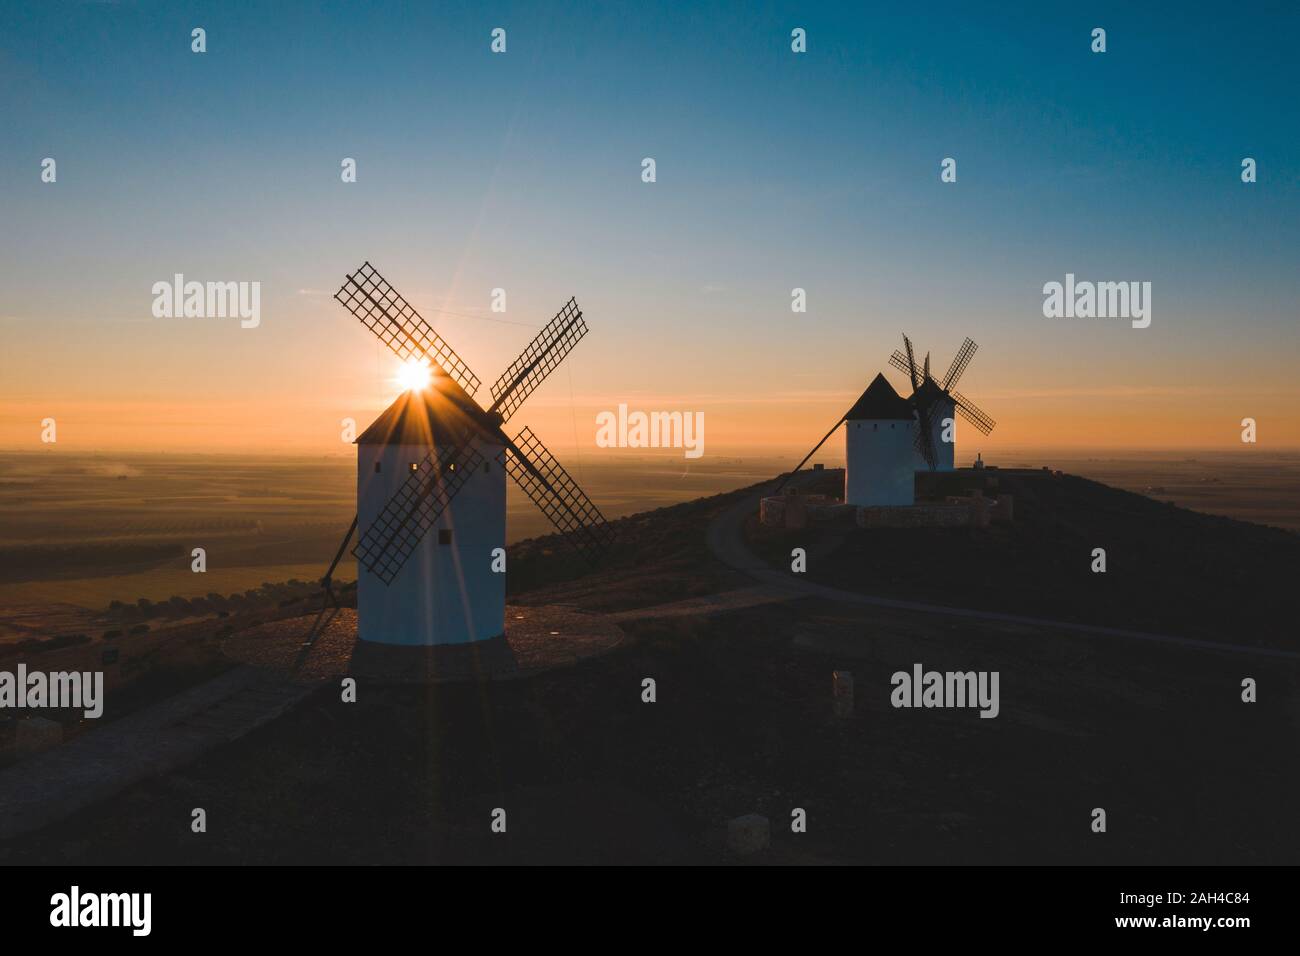 Espagne, province de Ciudad Real, Alcazar de San Juan, vieux moulins à vent debout sur la colline parlementaire au coucher du soleil Banque D'Images